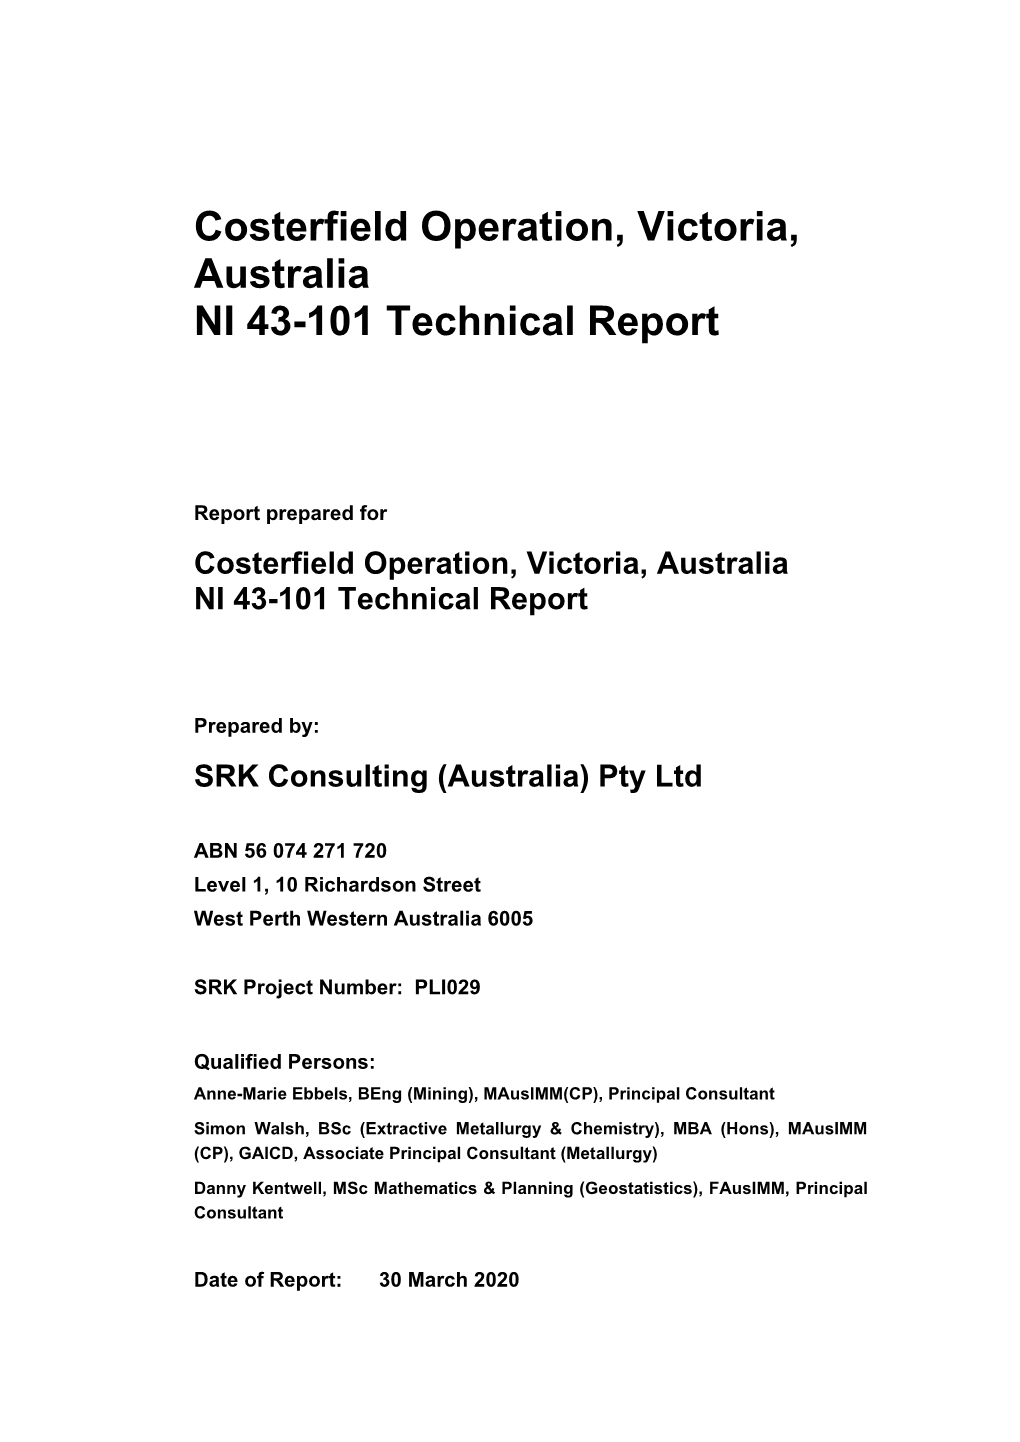 Costerfield Operation, Victoria, Australia NI 43-101 Technical Report